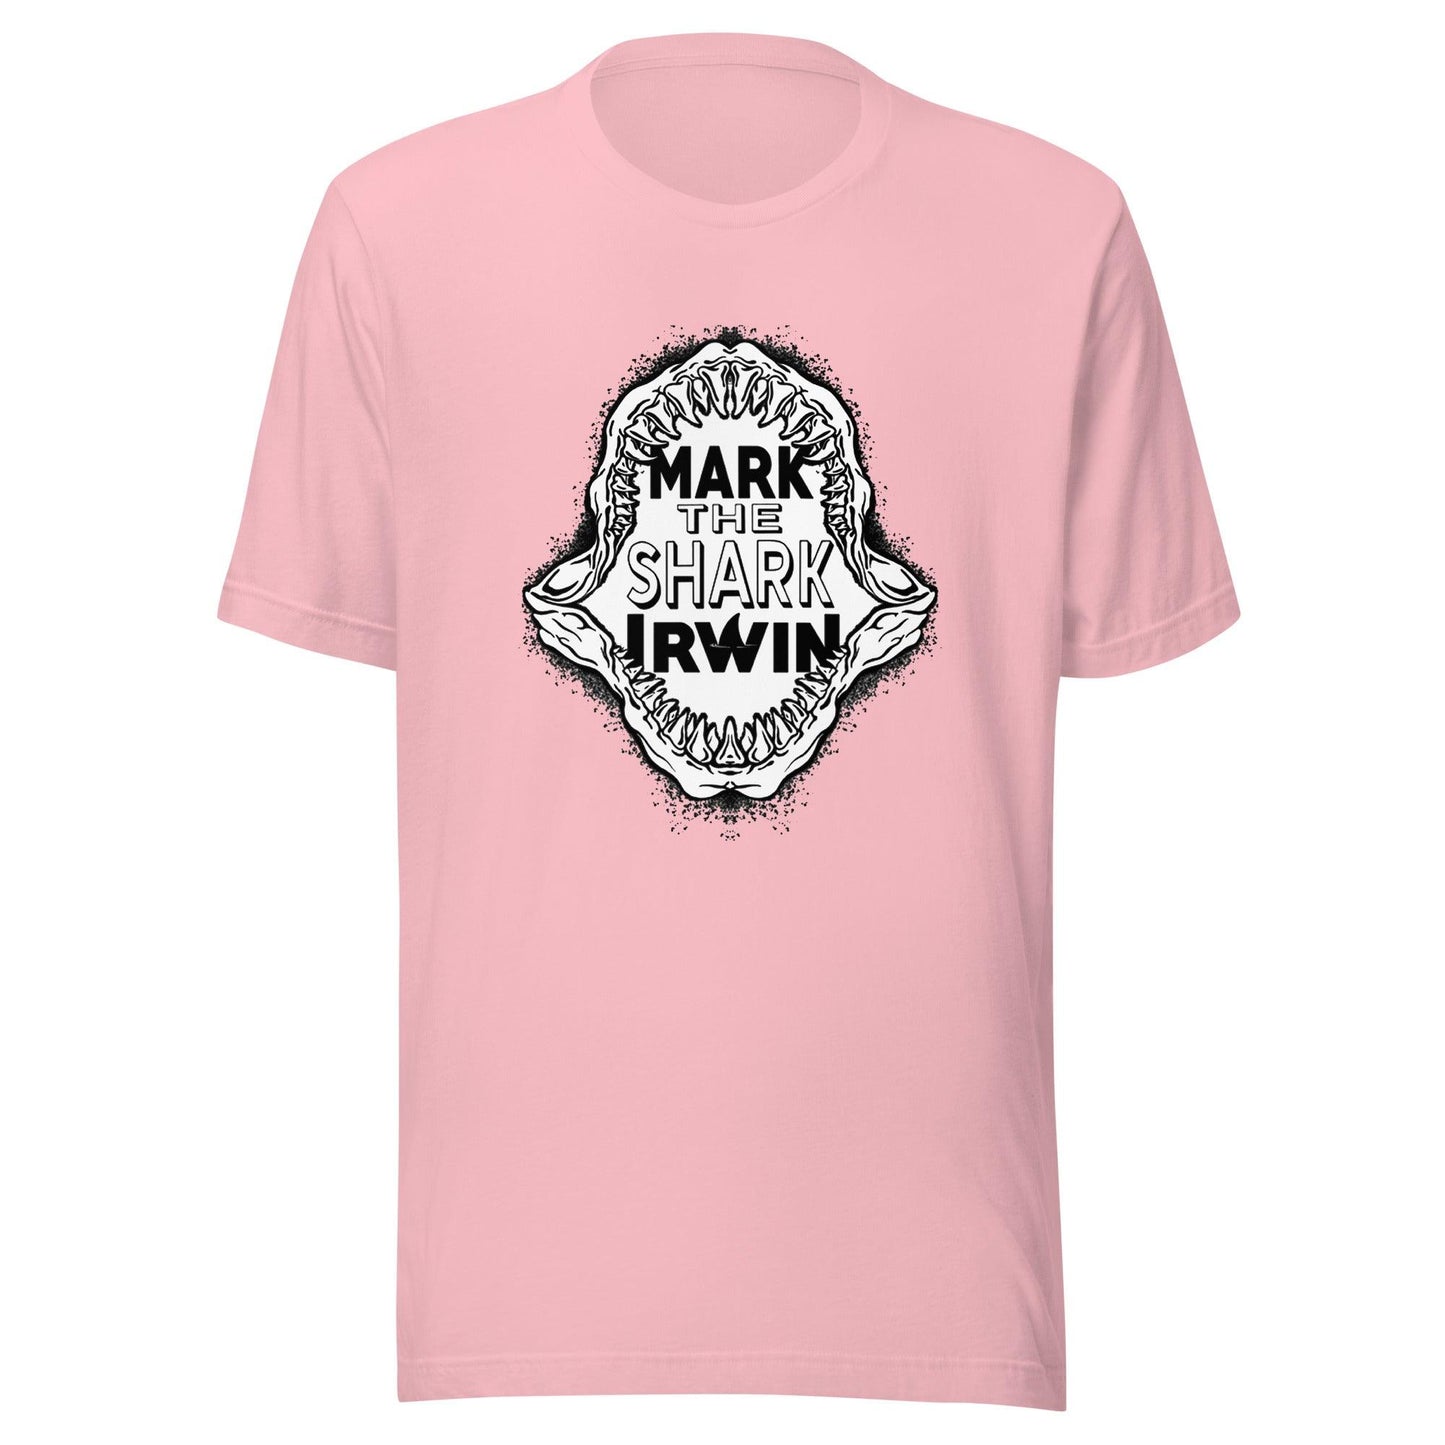 Mark Irwin "The Shark" t-shirt - Fan Arch